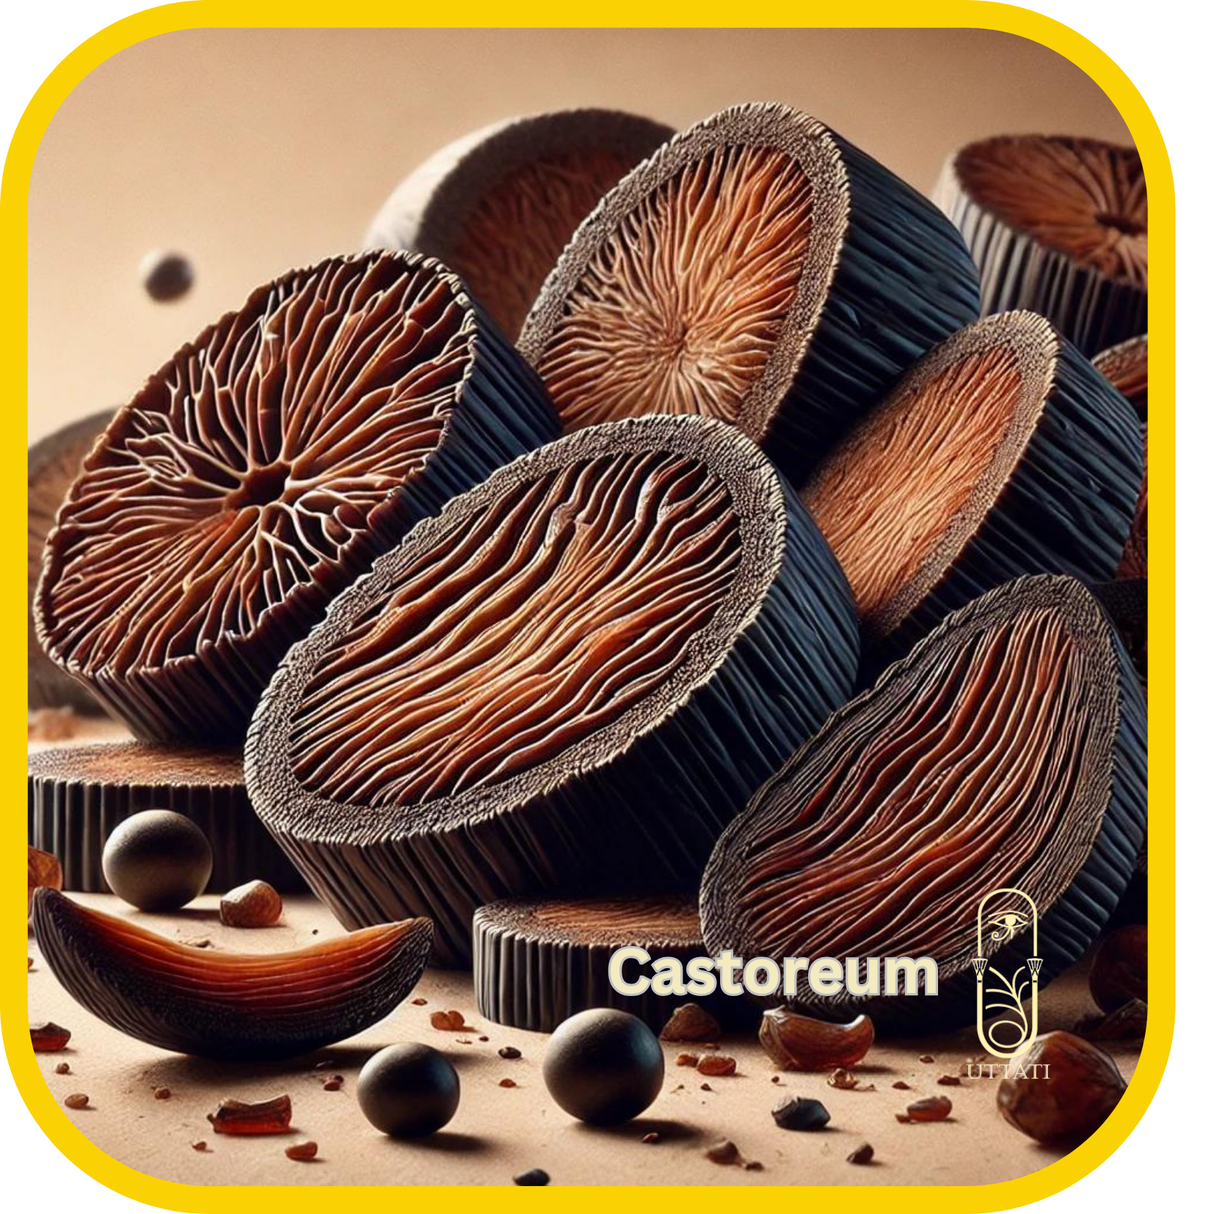 Castorium